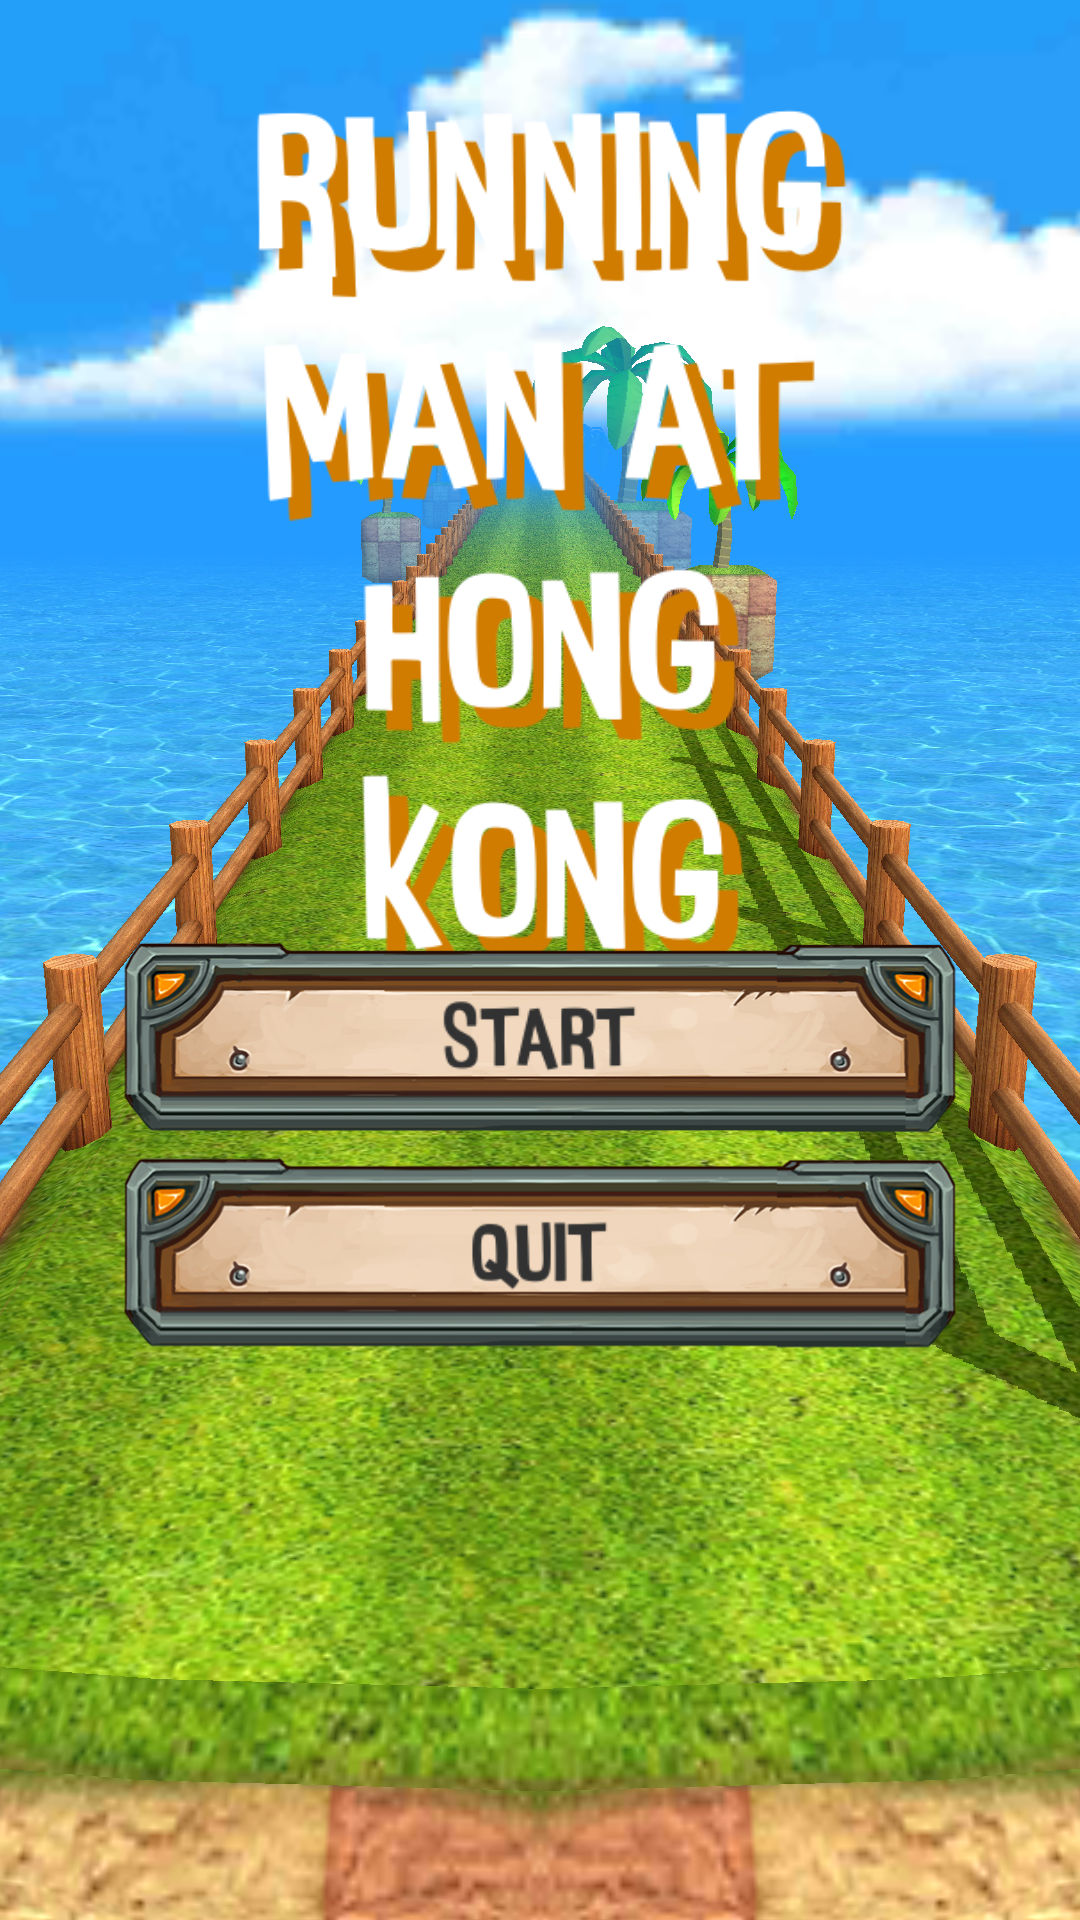 Screenshot 1 of Running Man tại Hồng Kông Tôi chạy với Hồng Kông 1.2